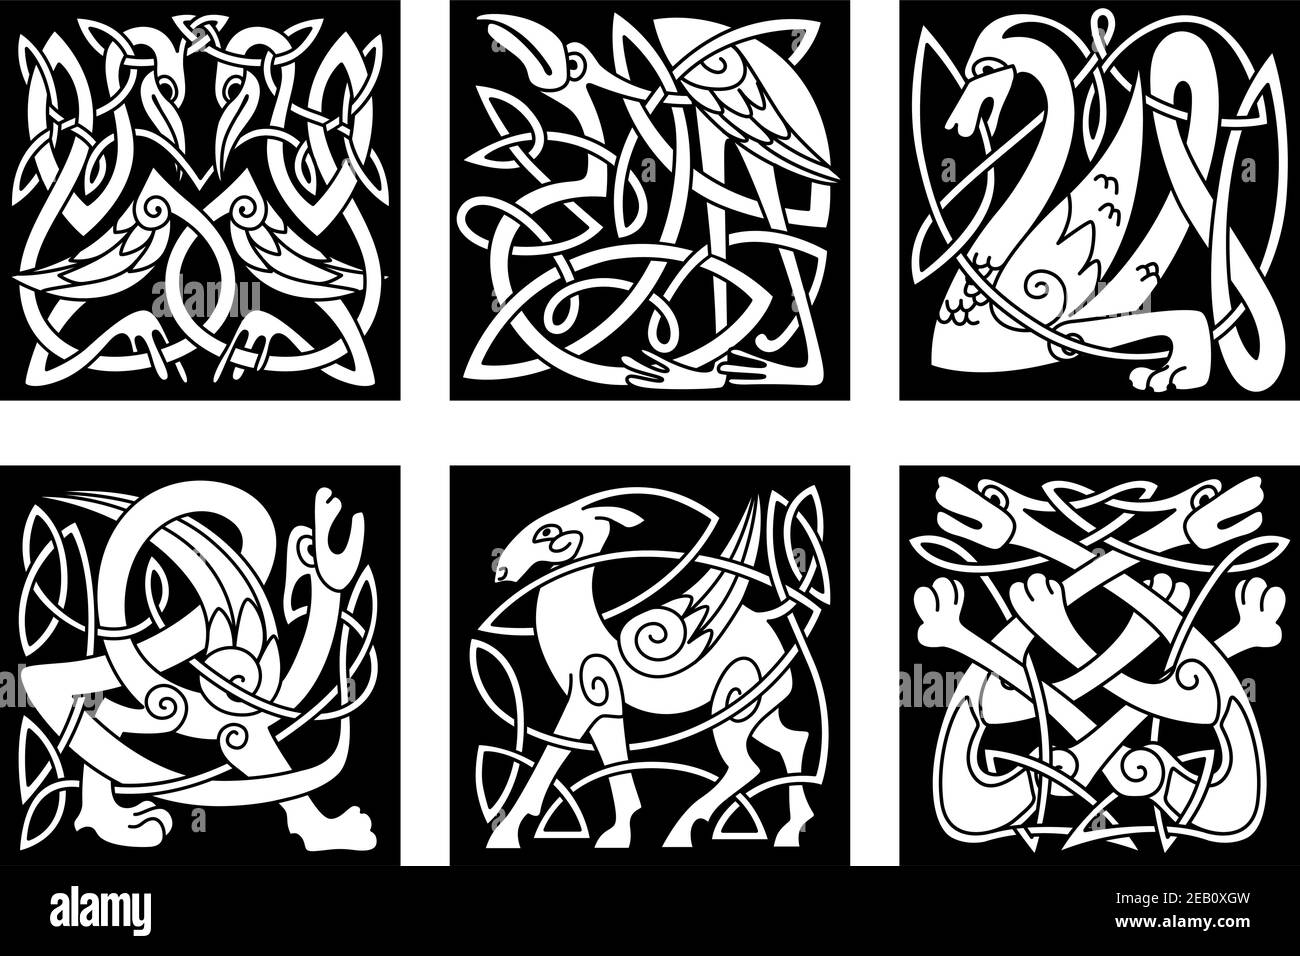 Mythische keltische Tiere Reiher, Drache, Wölfe, Hirsche, gryphon, Störche auf schwarzem Hintergrund für Tattoo, Maskottchen oder Totem-Design Stock Vektor